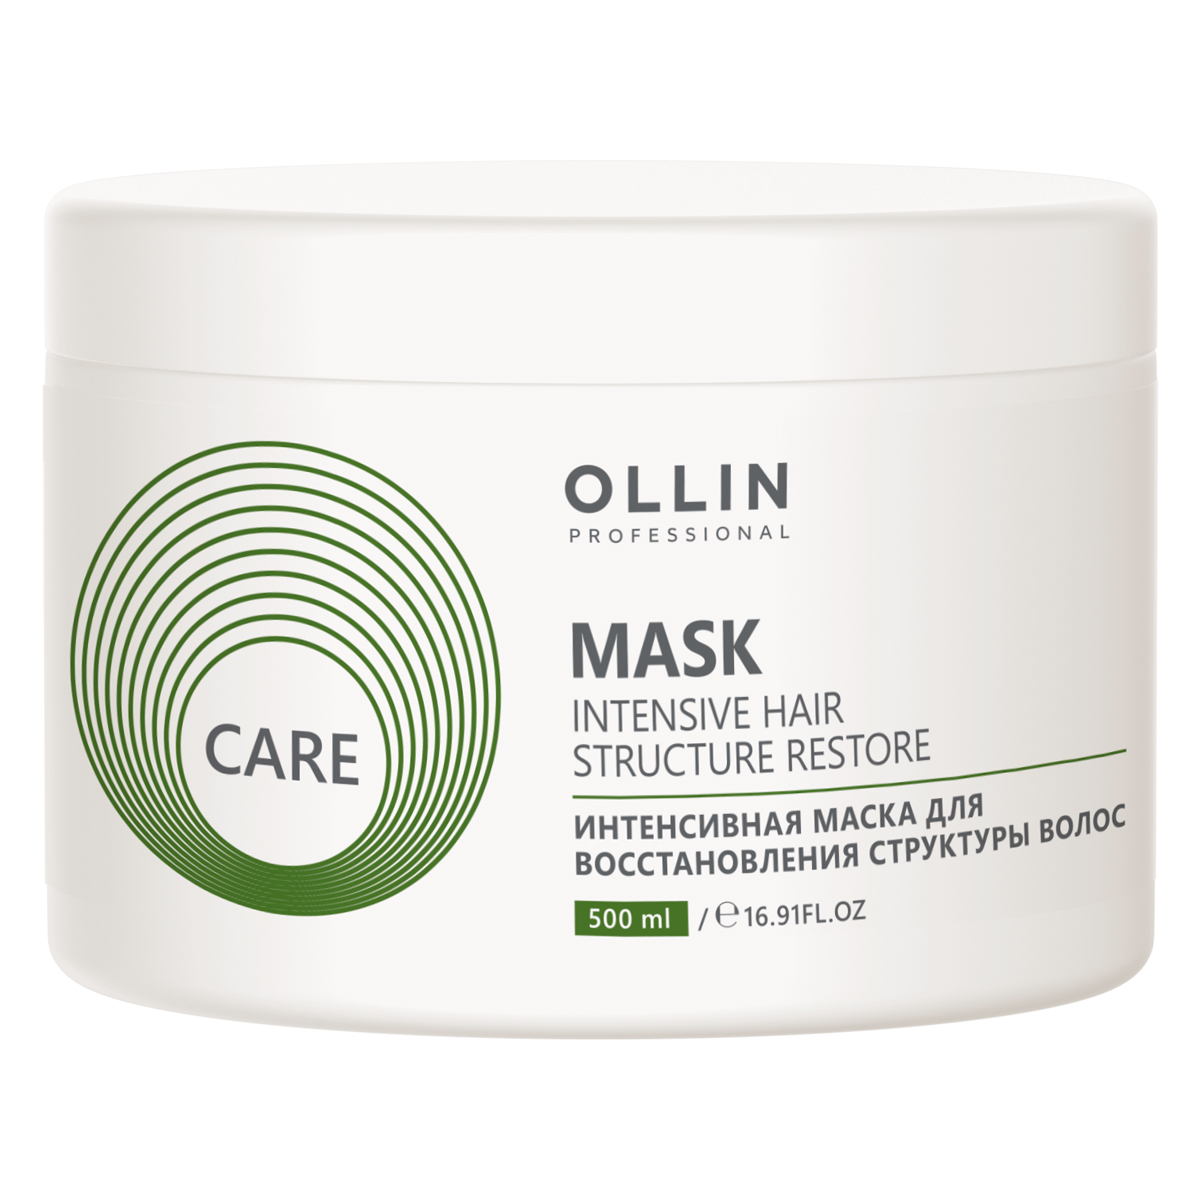 Ollin Professional Интенсивная маска для восстановления структуры волос, 500 мл (Ollin Professional, Care) ollin professional интенсивная маска для восстановления структуры волос 200 мл ollin professional care